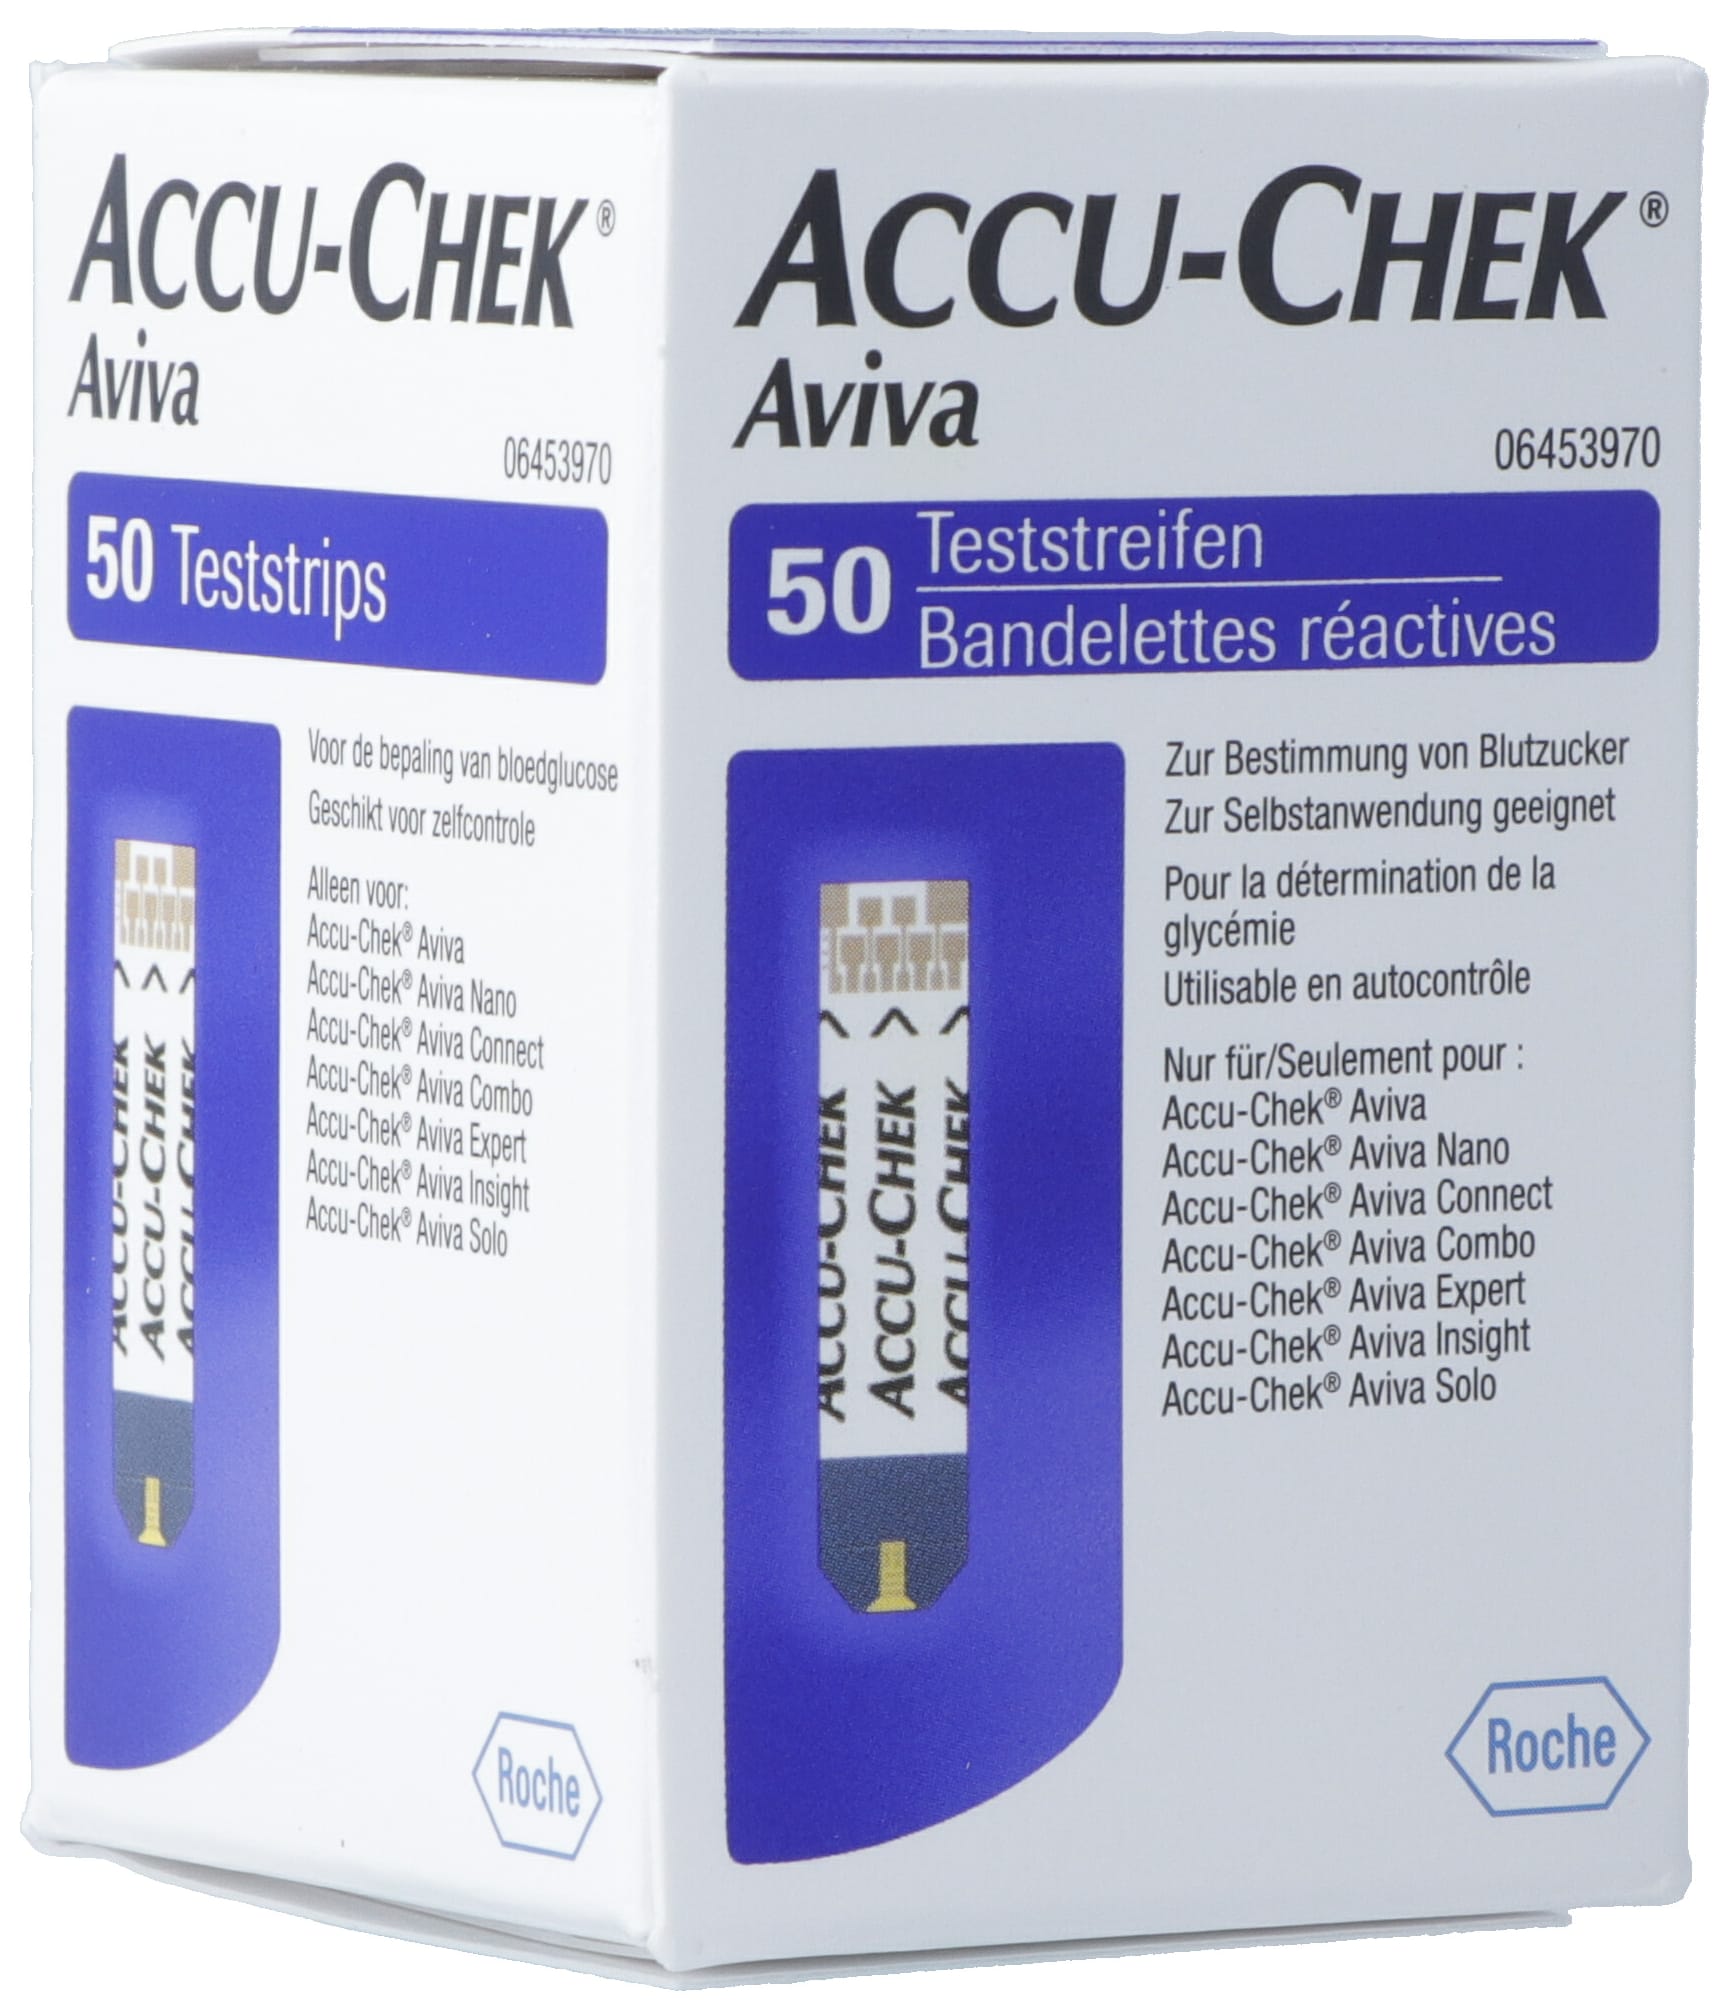 ACCU-CHEK AVIVA Teststreifen 50 Stk